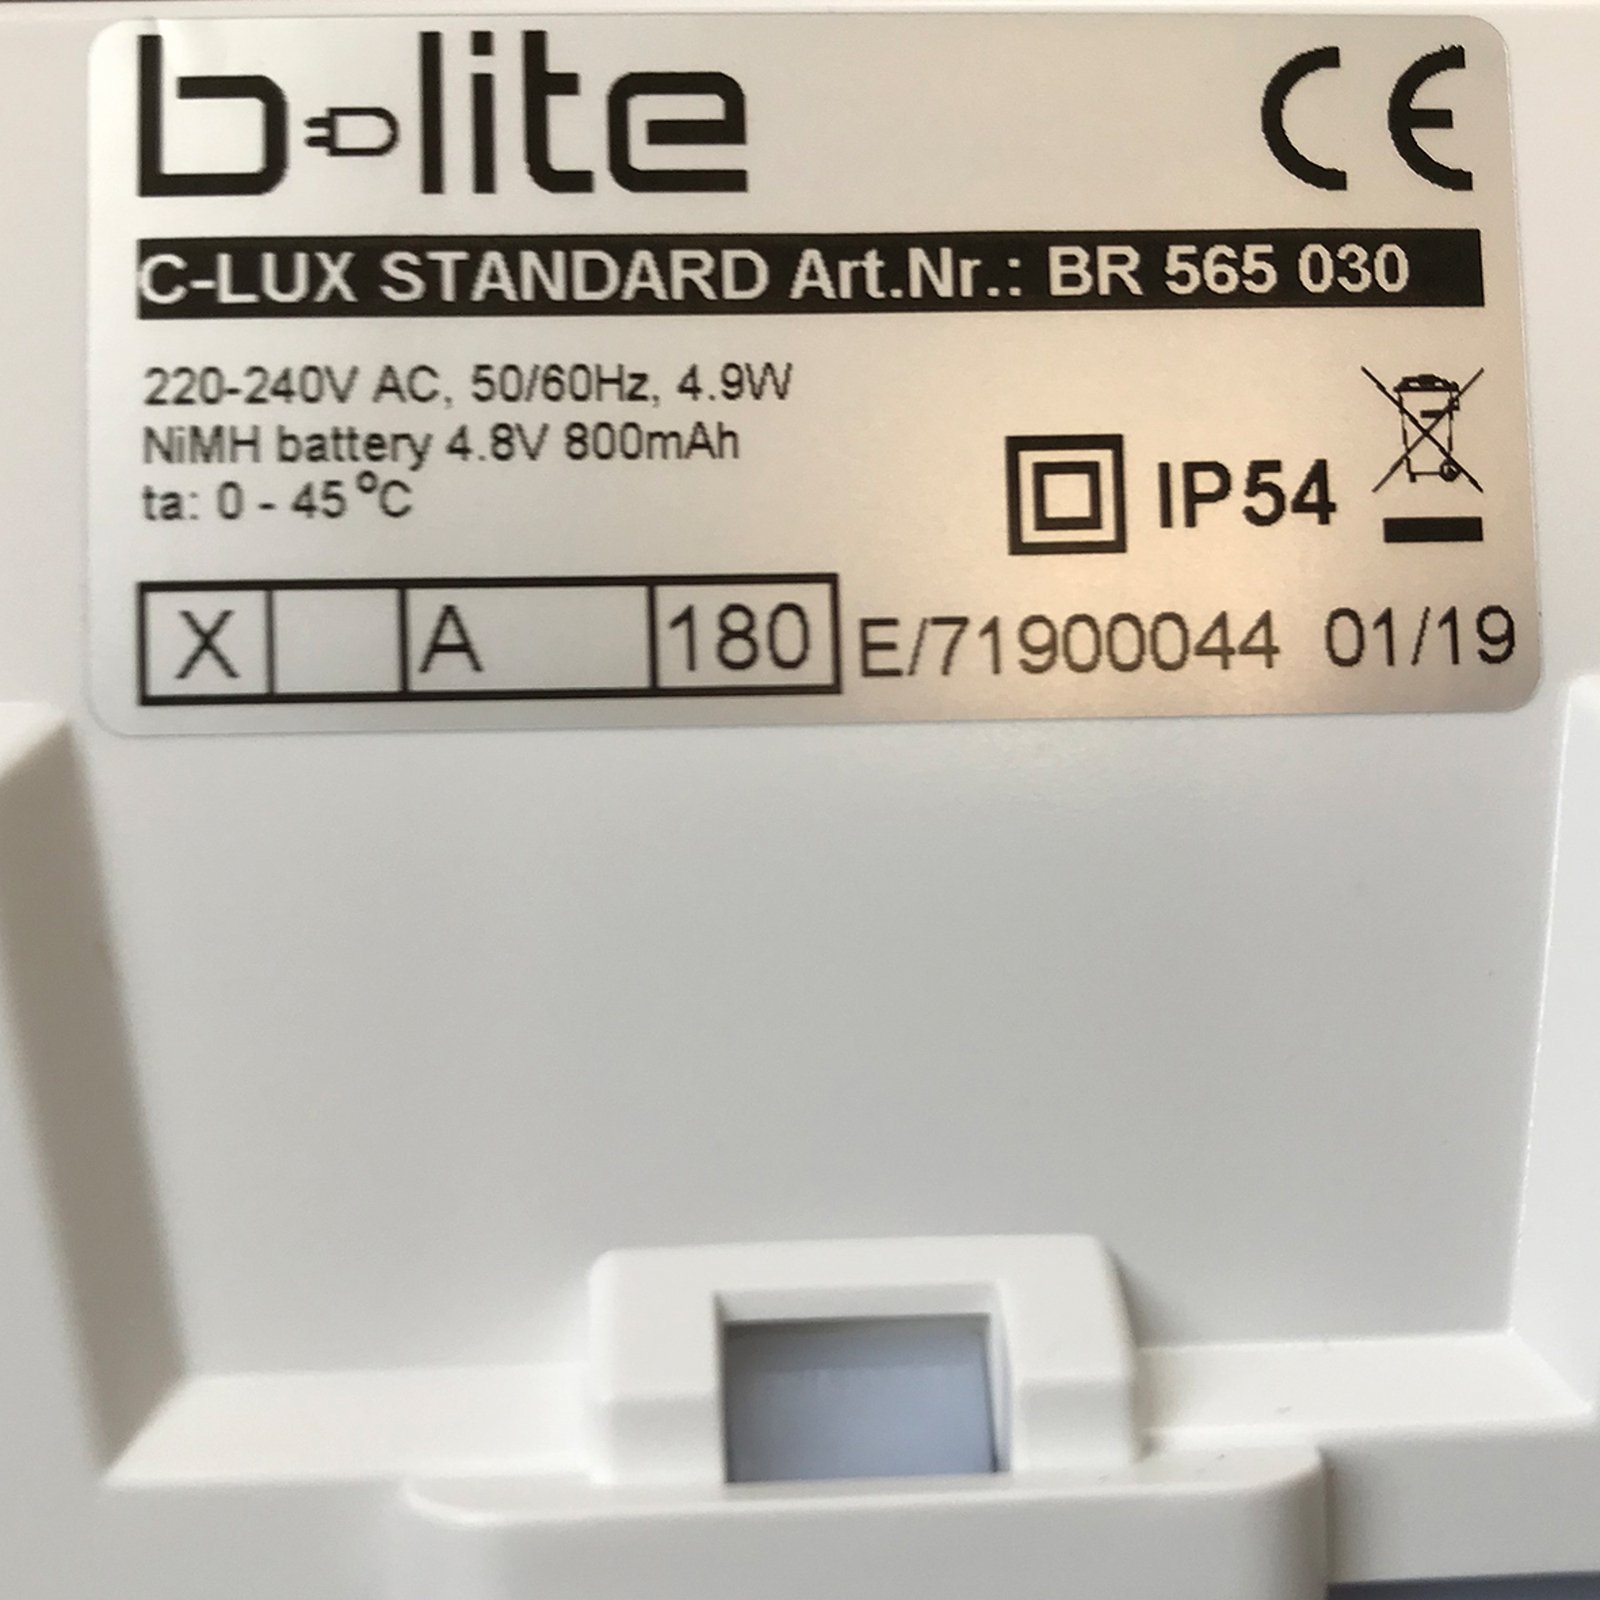 LED noodlamp C-Lux Standard, centrale toevoer